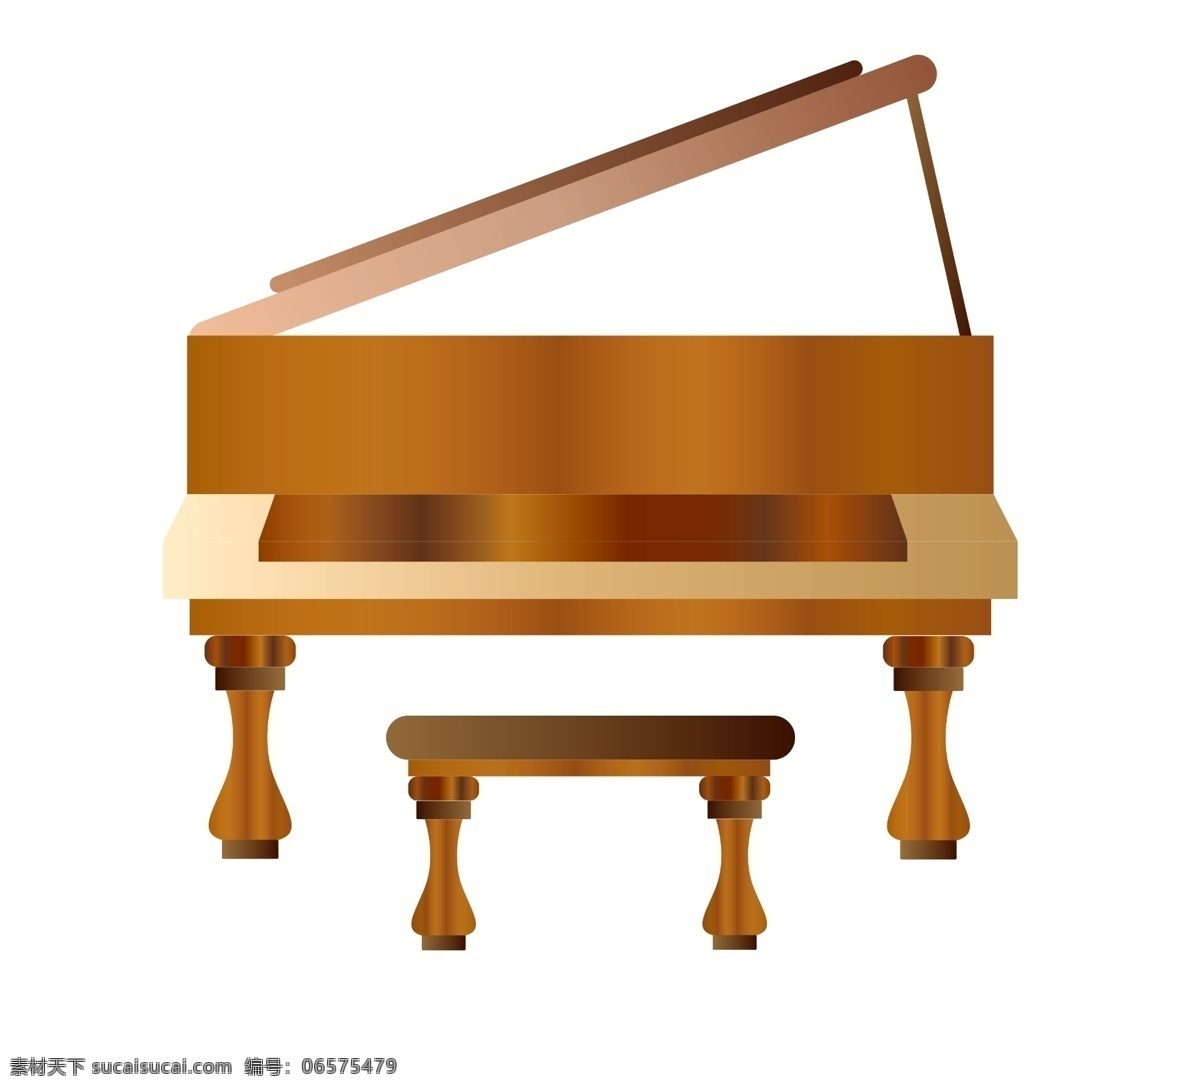 音乐 演奏 钢琴 插画 棕色的钢琴 演奏的钢琴 卡通插画 音乐插画 乐器插画 钢琴插画 西方钢琴